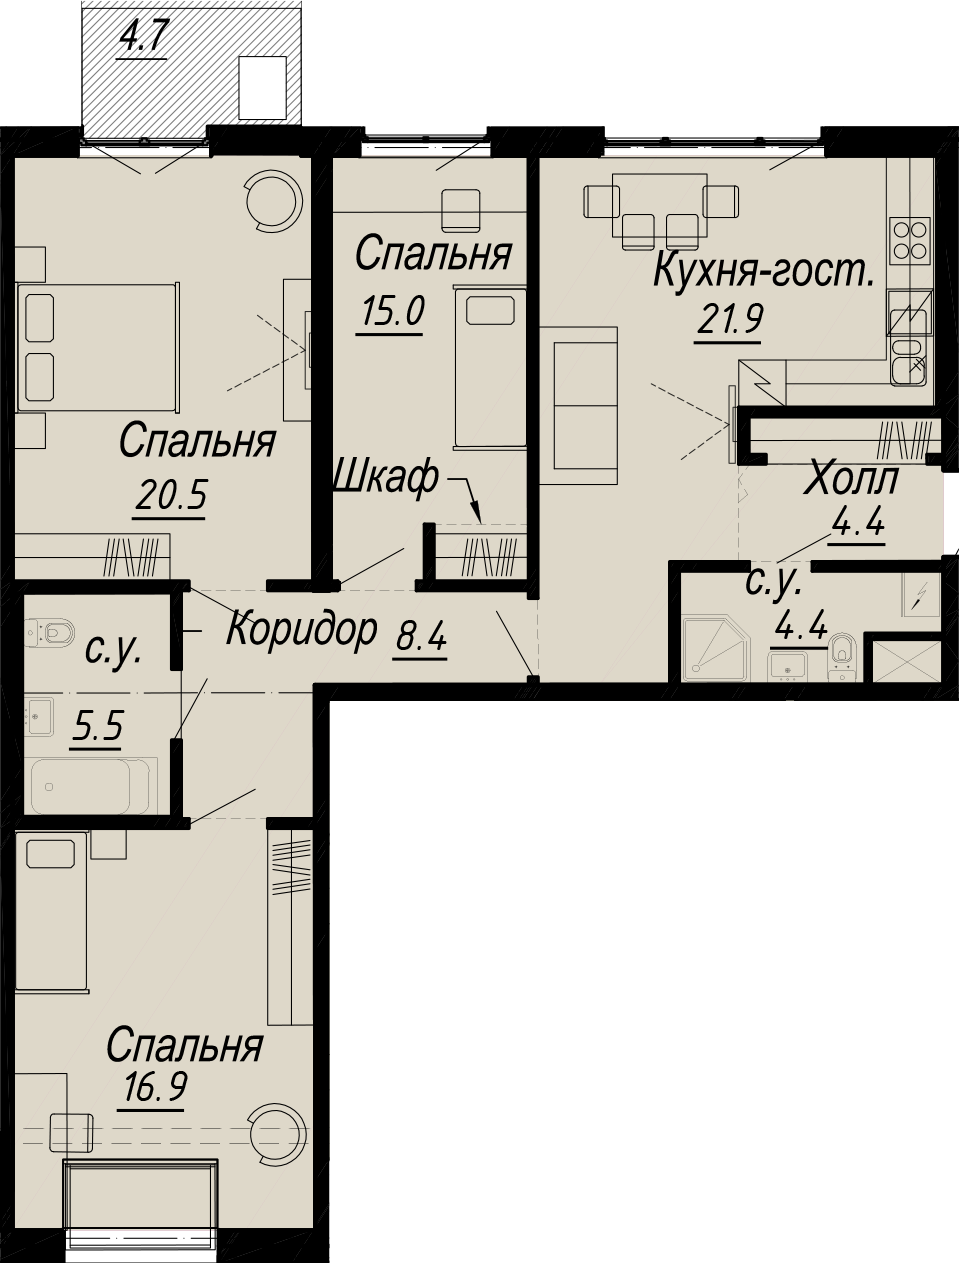 3-комнатная квартира  №5-7 в Meltzer Hall: 98.4 м², этаж 7 - купить в Санкт-Петербурге